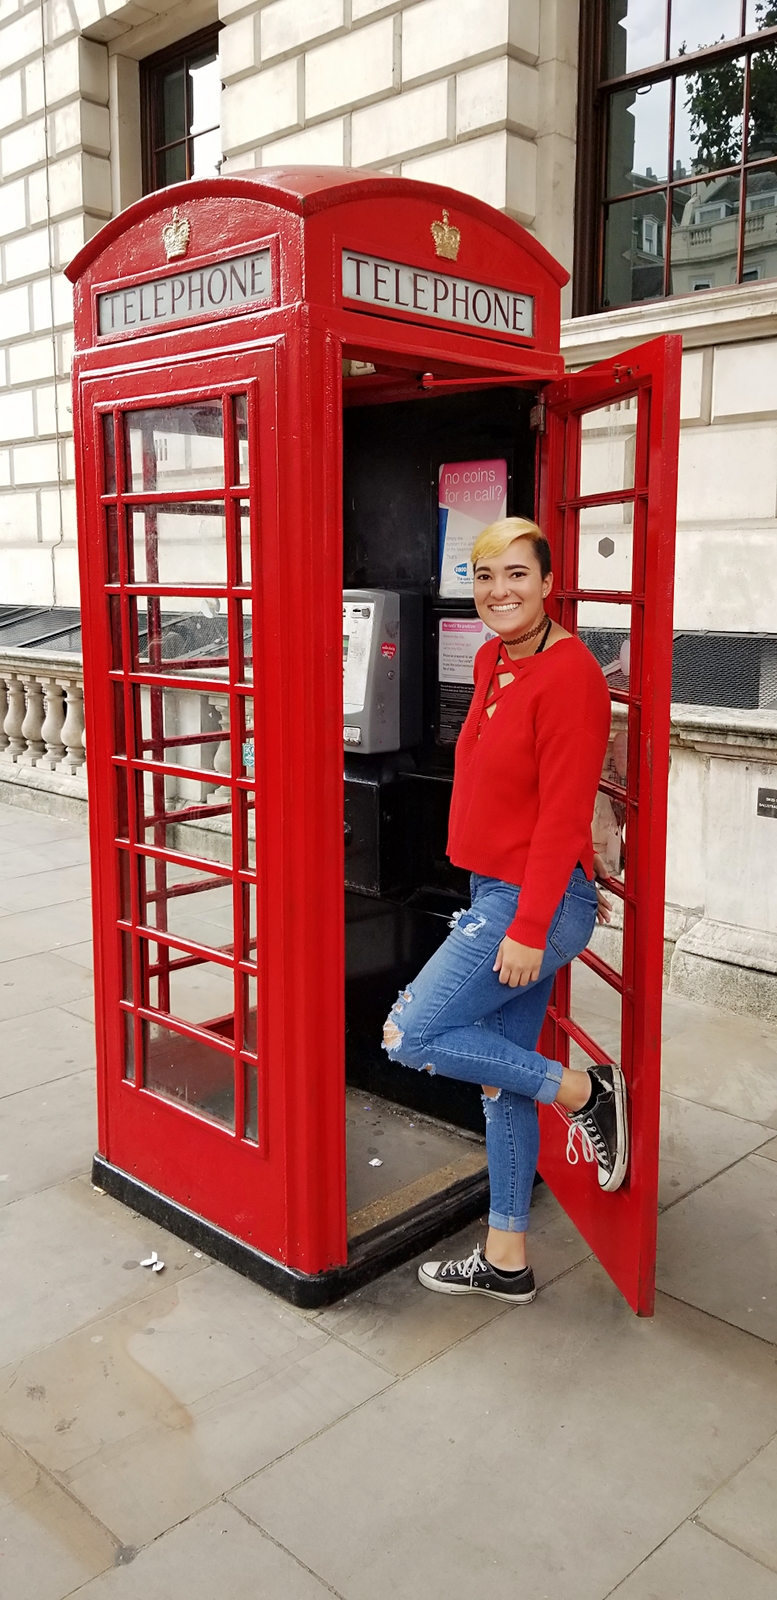 Sarah in London